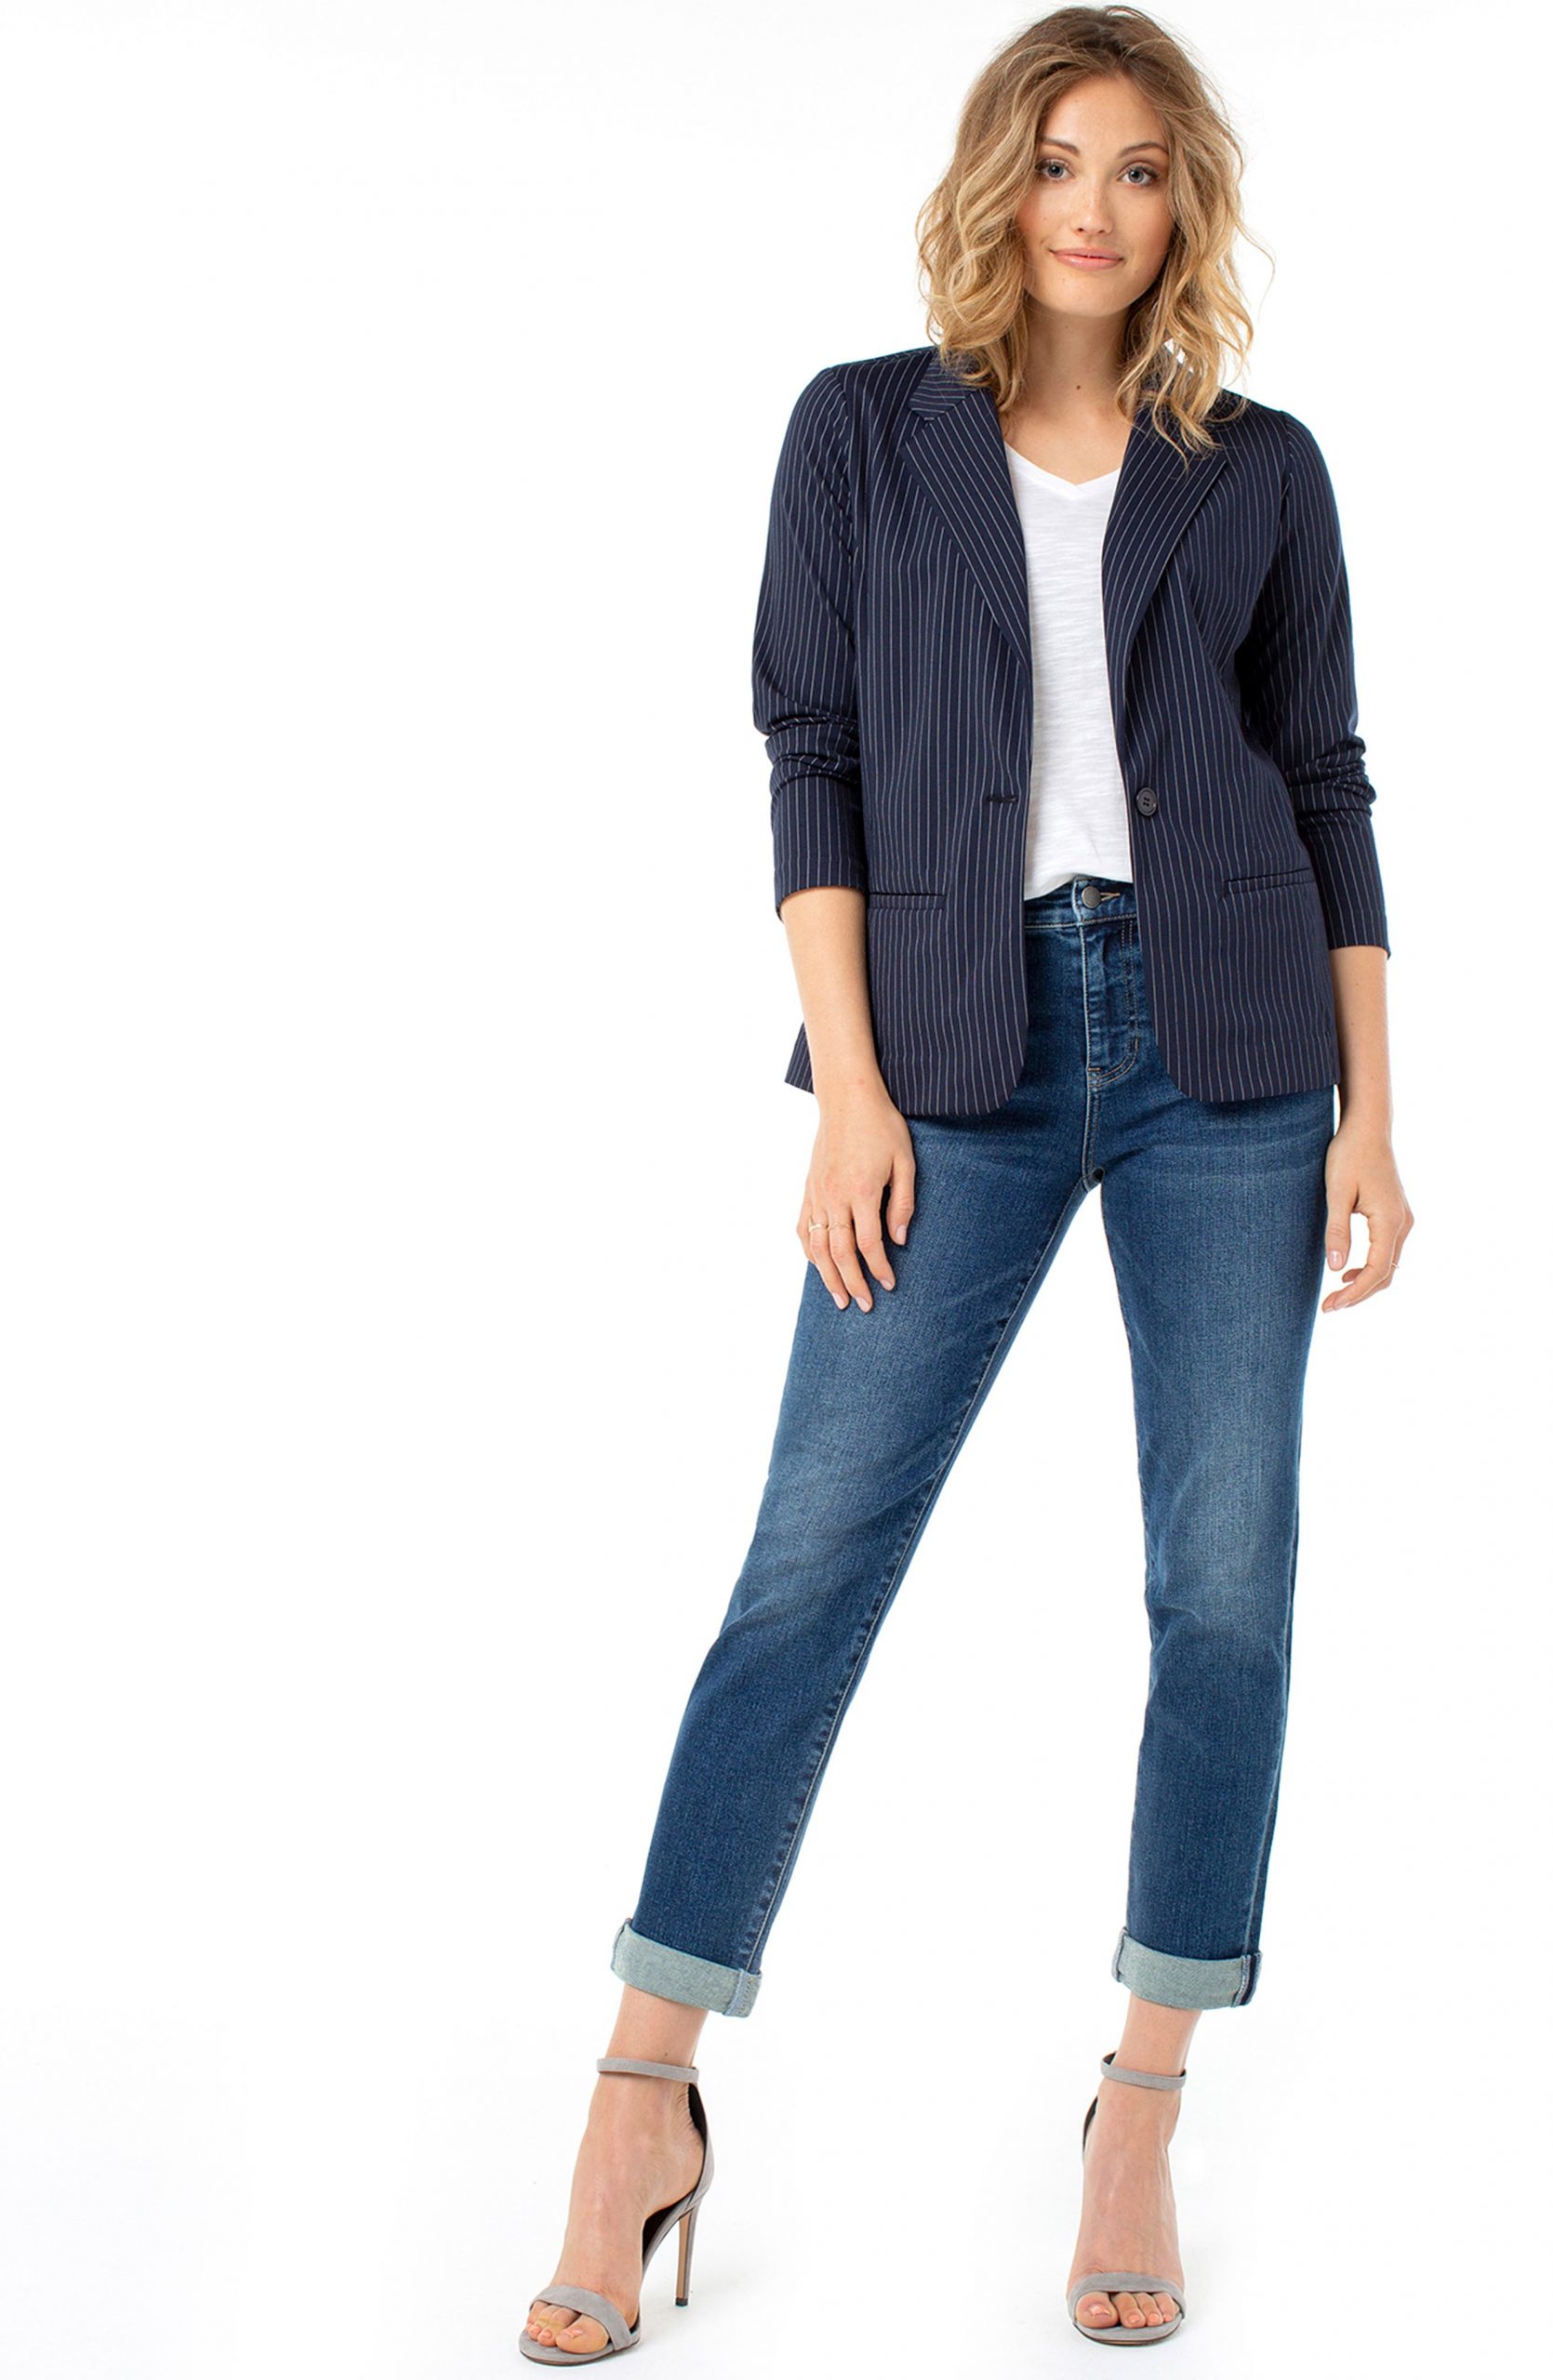 Cách phối đồ với quần jeans girlfriend theo cách thời trang mới đầy cuốn hút - Ab-Solution Cuffed Girlfriend Jeans WIT & WISDOM